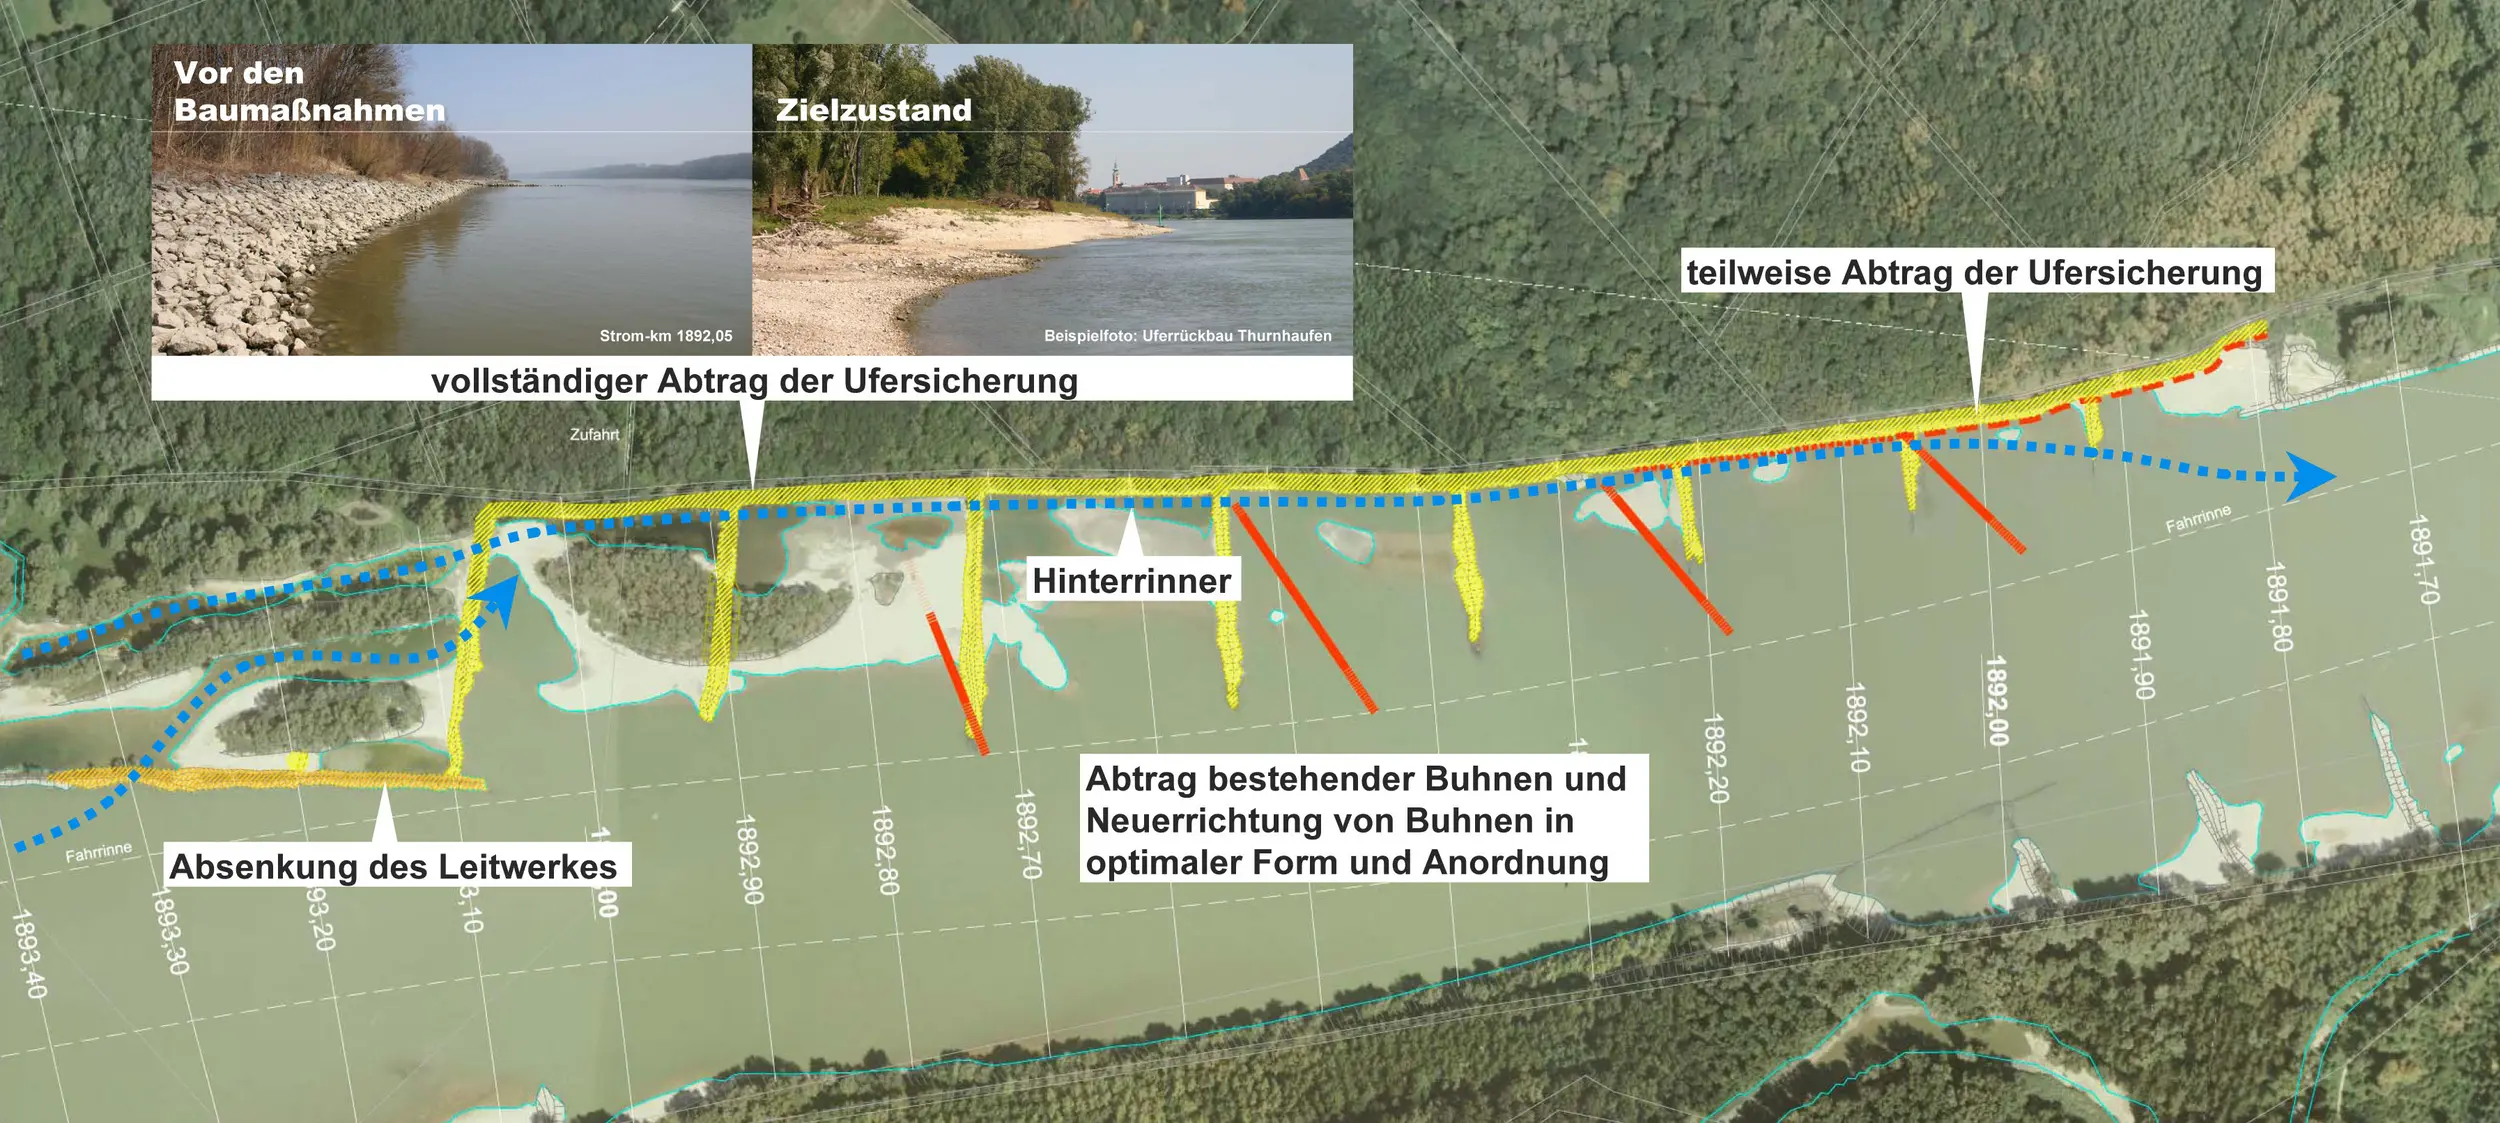 Maßnahmenübersicht zum Pilotprojekt Witzelsdorf, Abtrag bestehender Buhnen und Neuerrichtung, teilweise Abtrag der Ufersicherung, Absenkung des Leitwerkes